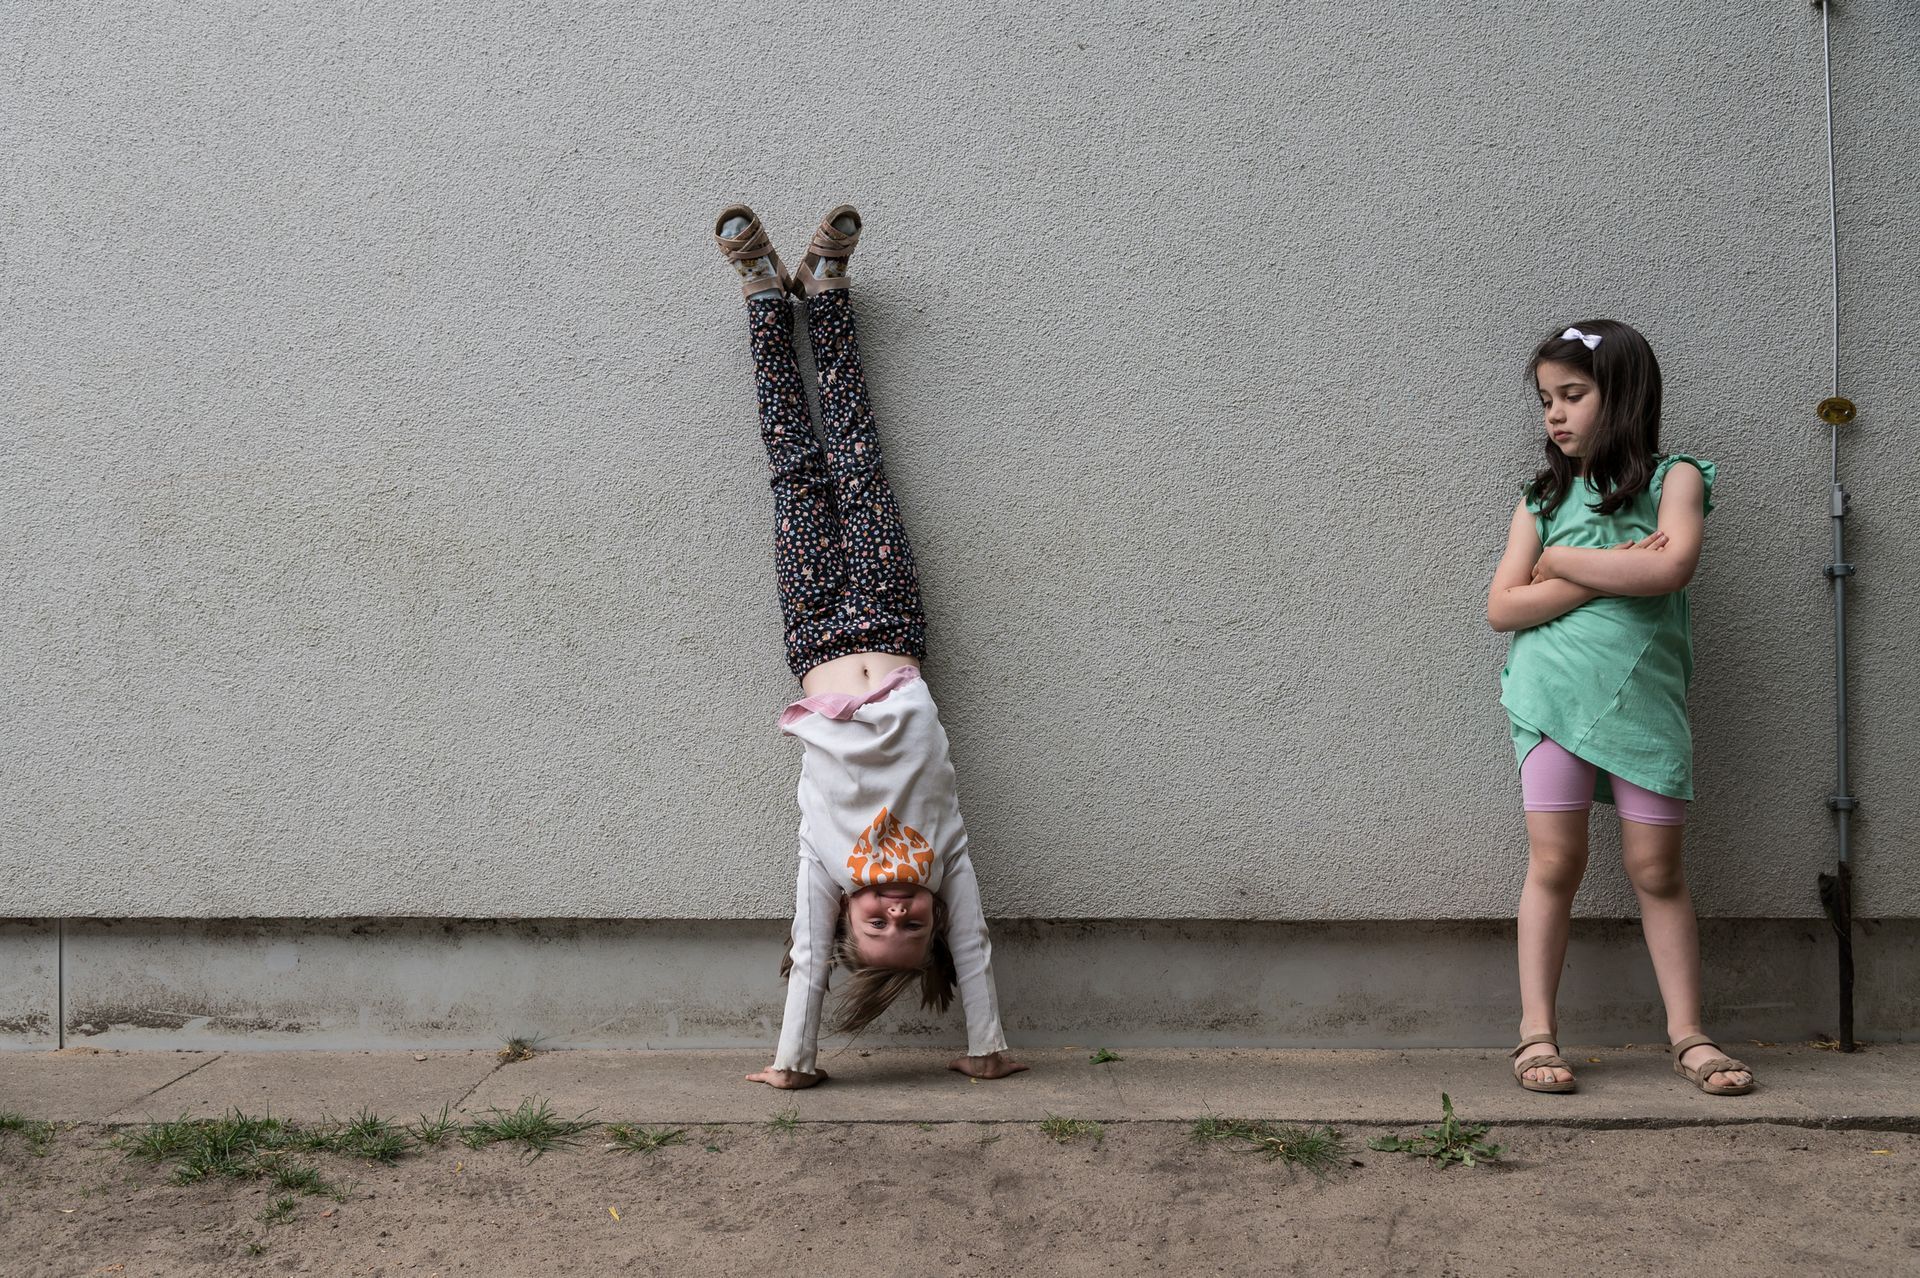 Zwei Kinder lehnen an einer Hauswand, eines davon mach einen HandstandReportage-Fotografie von WINTERPOL Hamburg